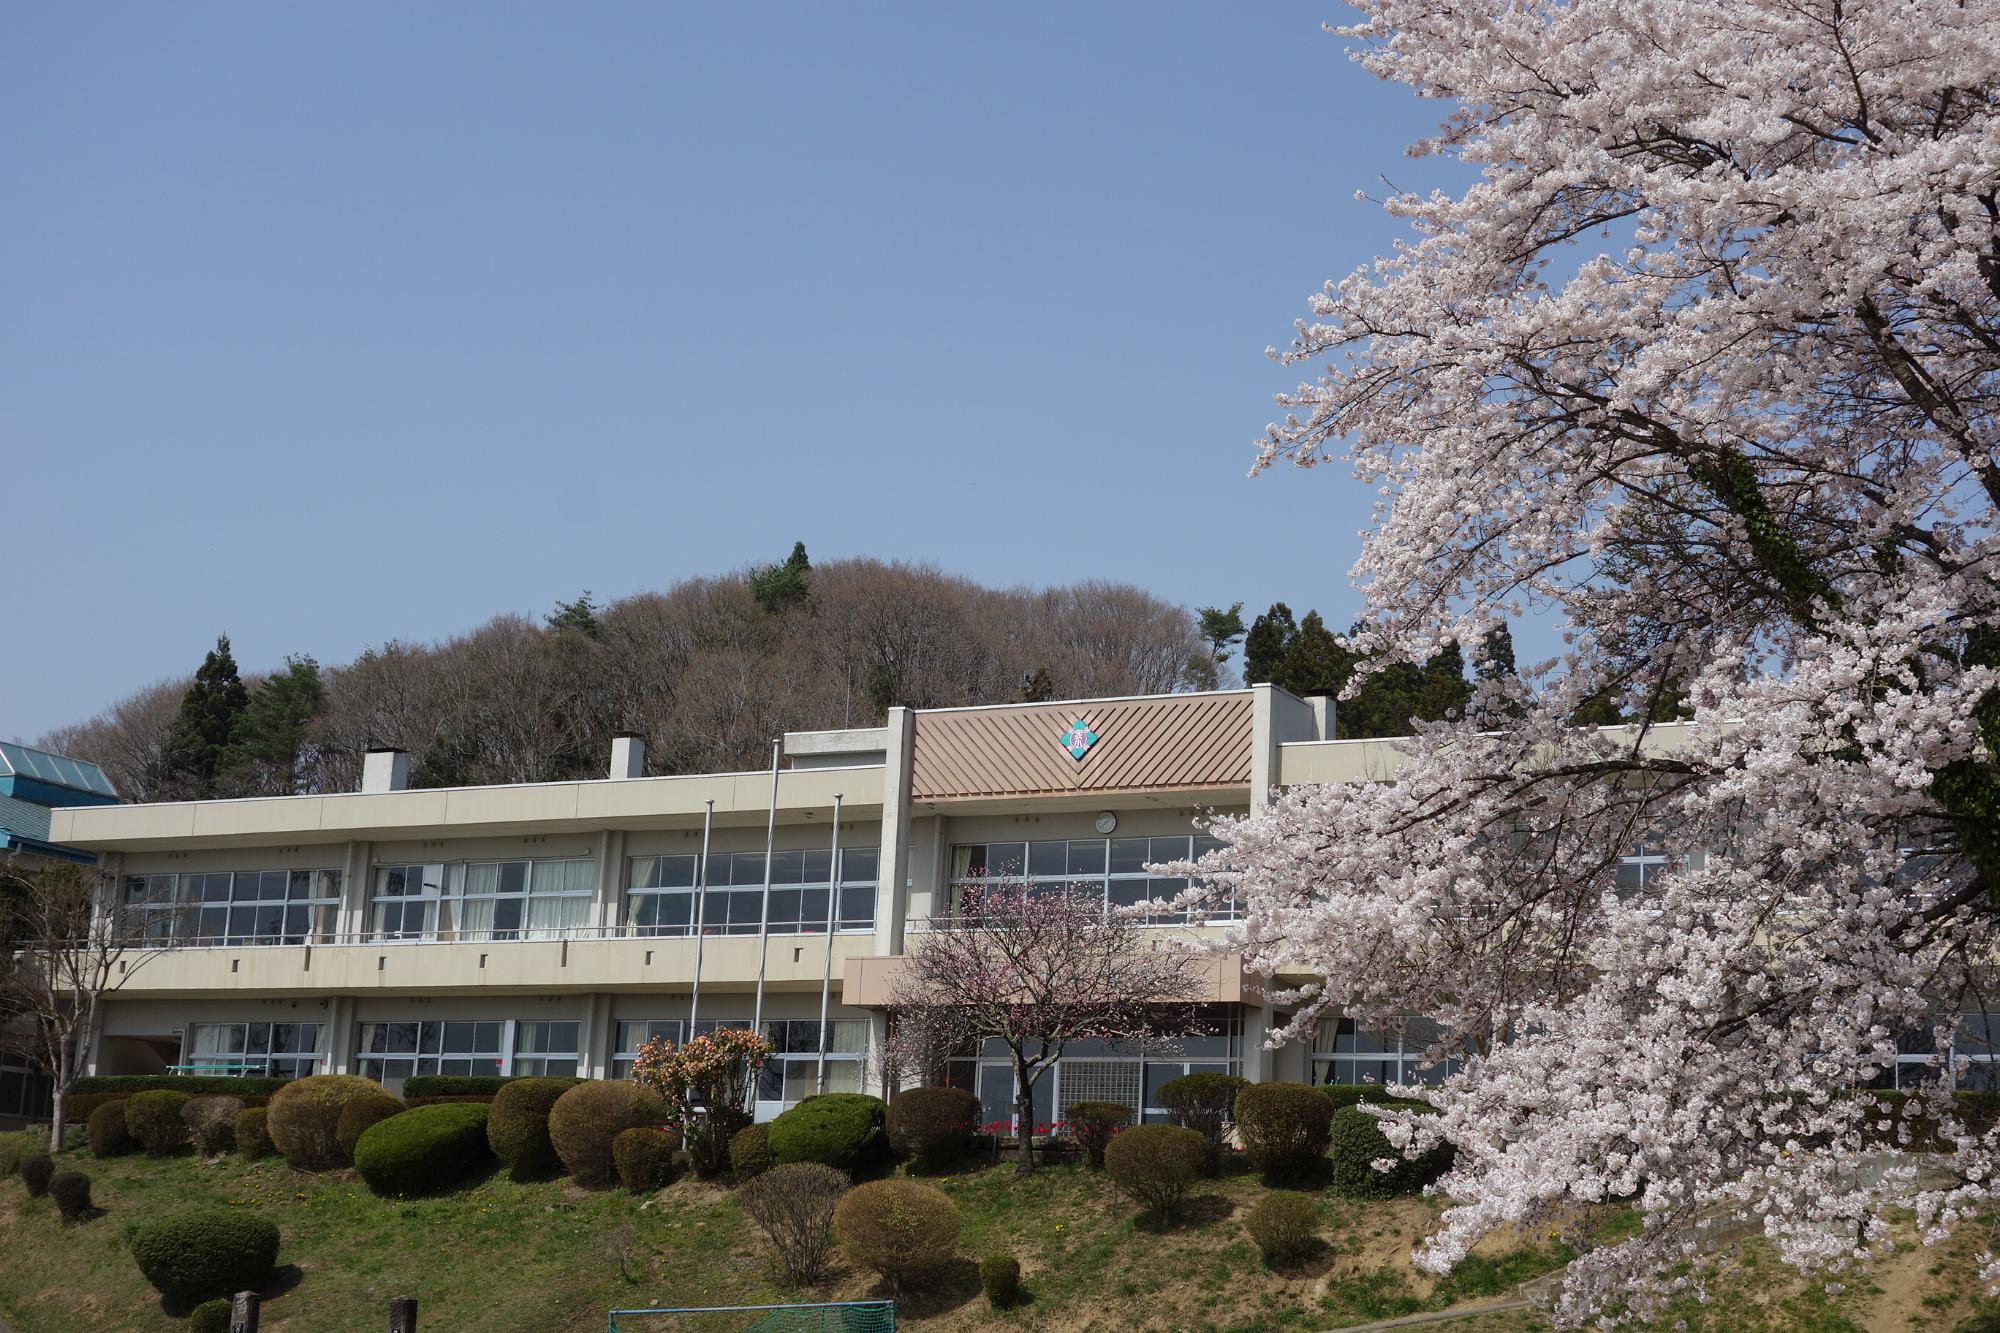 きれいに手入れされた植栽と二階建ての校舎、右側に写りこんだ満開の桜の花の写真